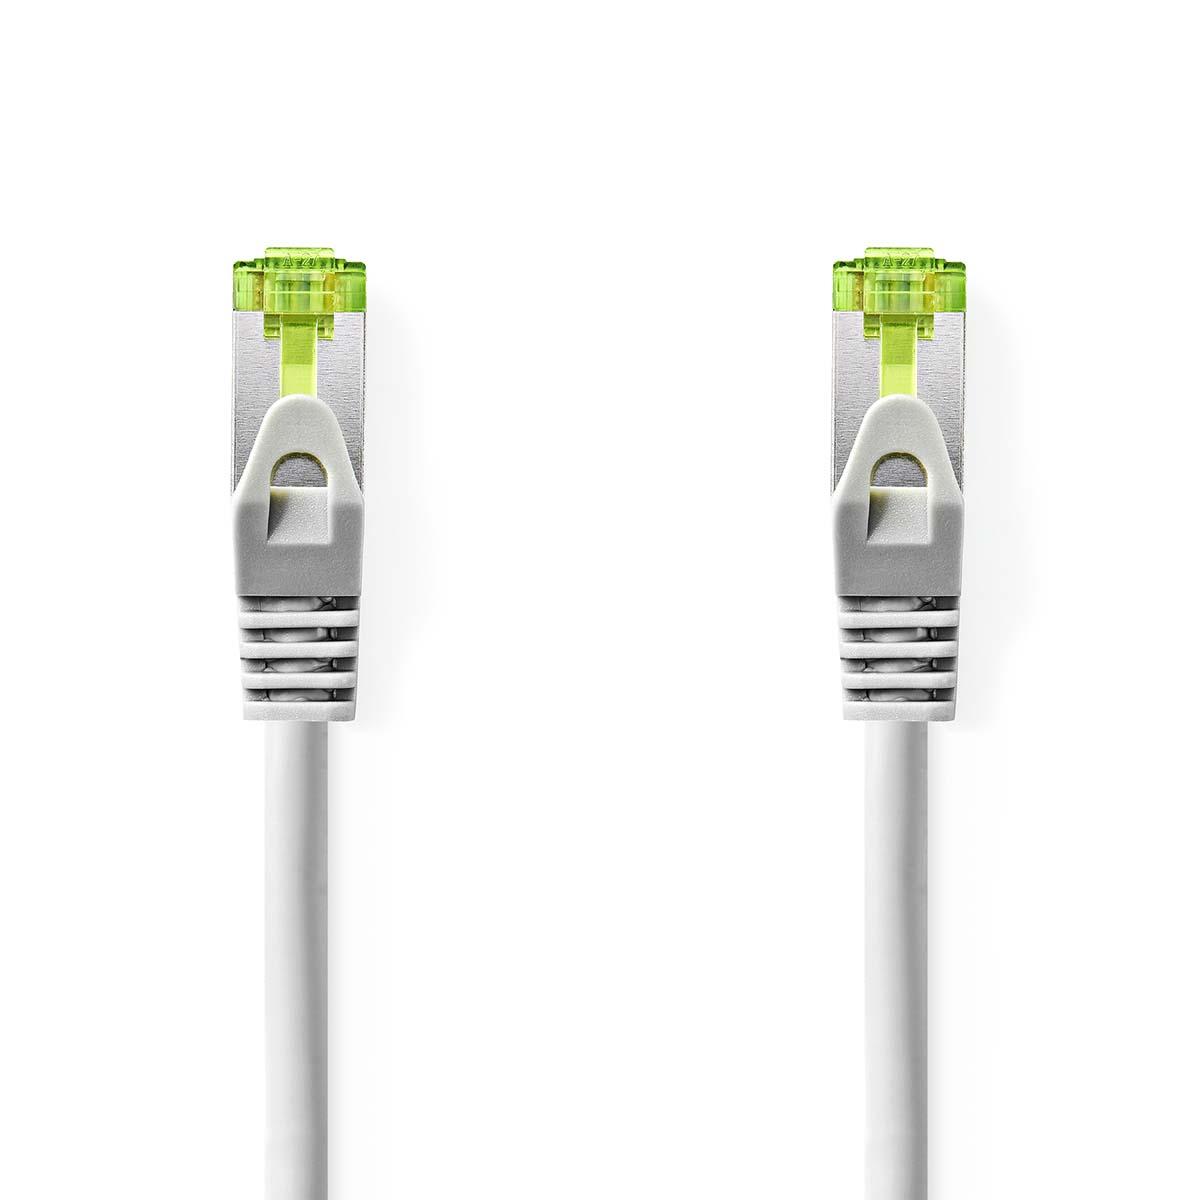 Cable ethernet rj45(8p8c) cat7 (10000 mbit/s) gris 15.0m